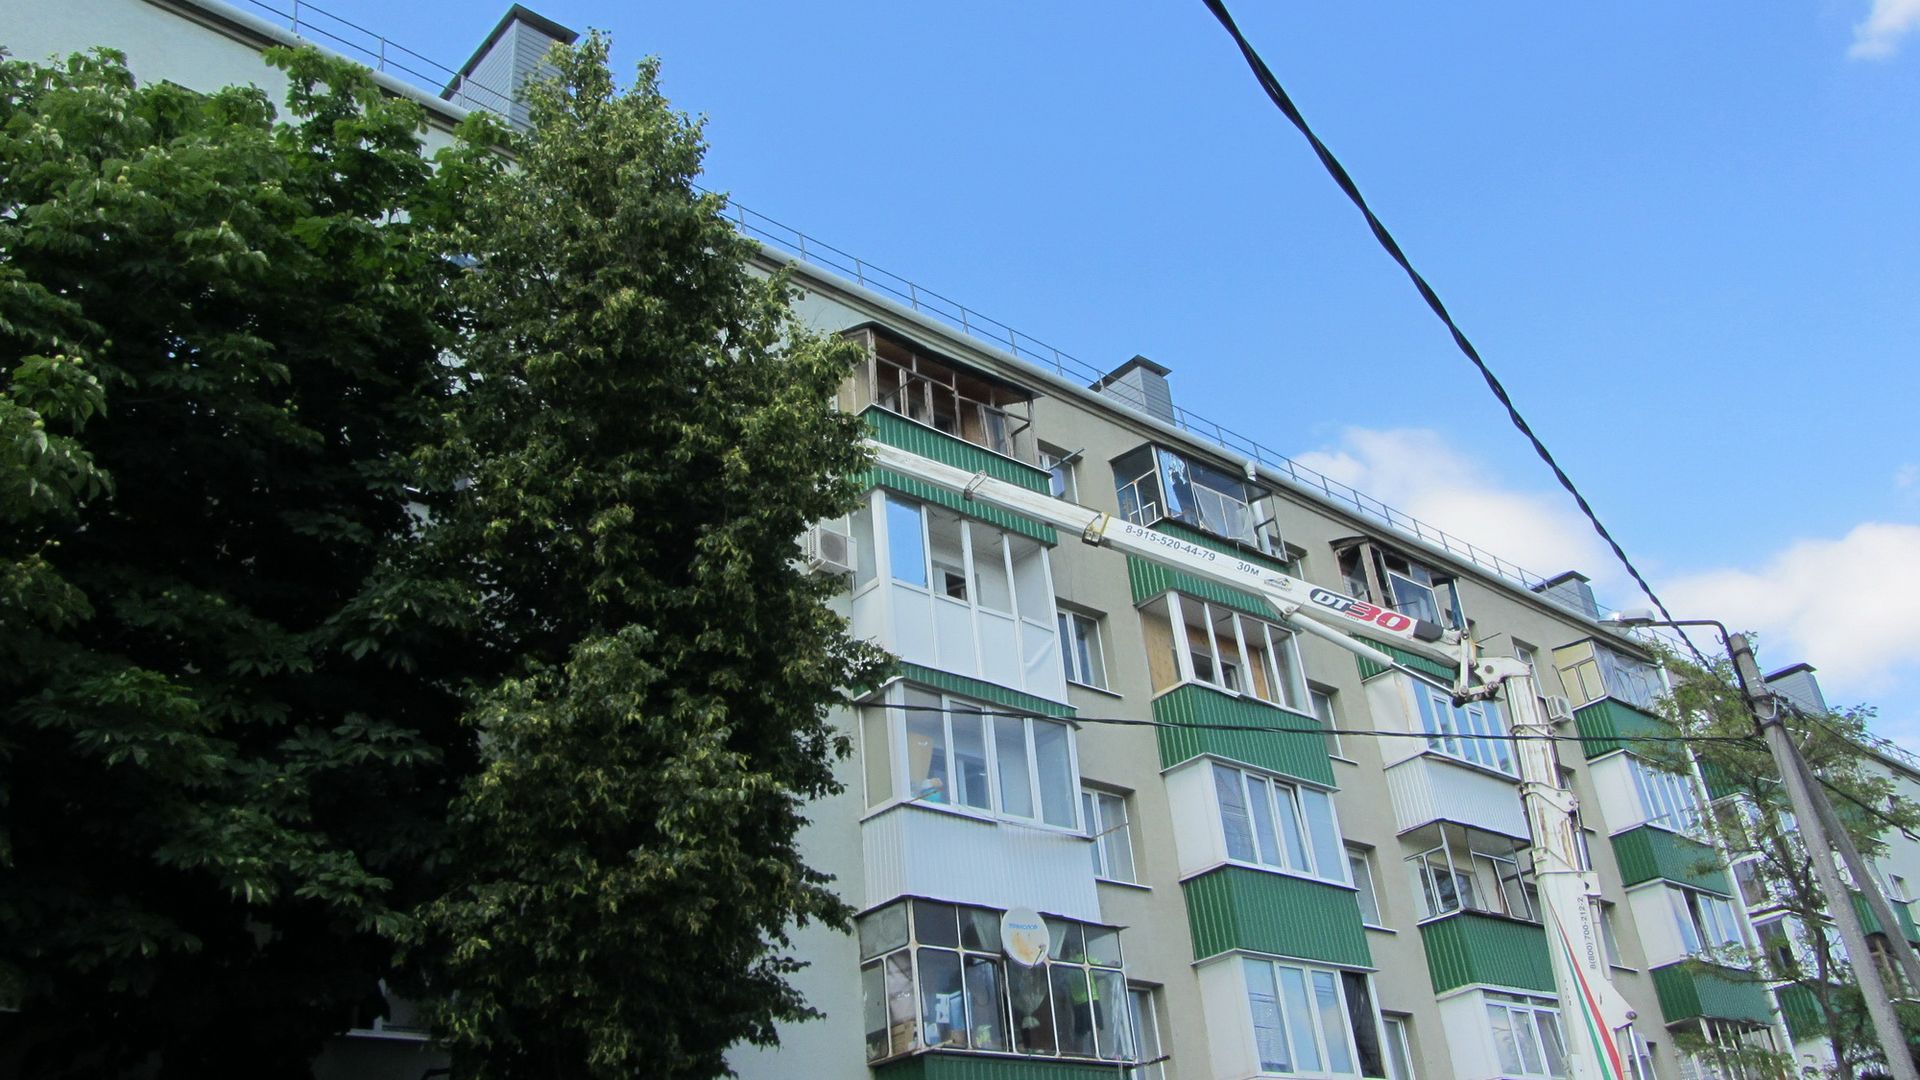 Краном убирают разрушения на верхних этажах. Белгород, 03.07.2022 г.